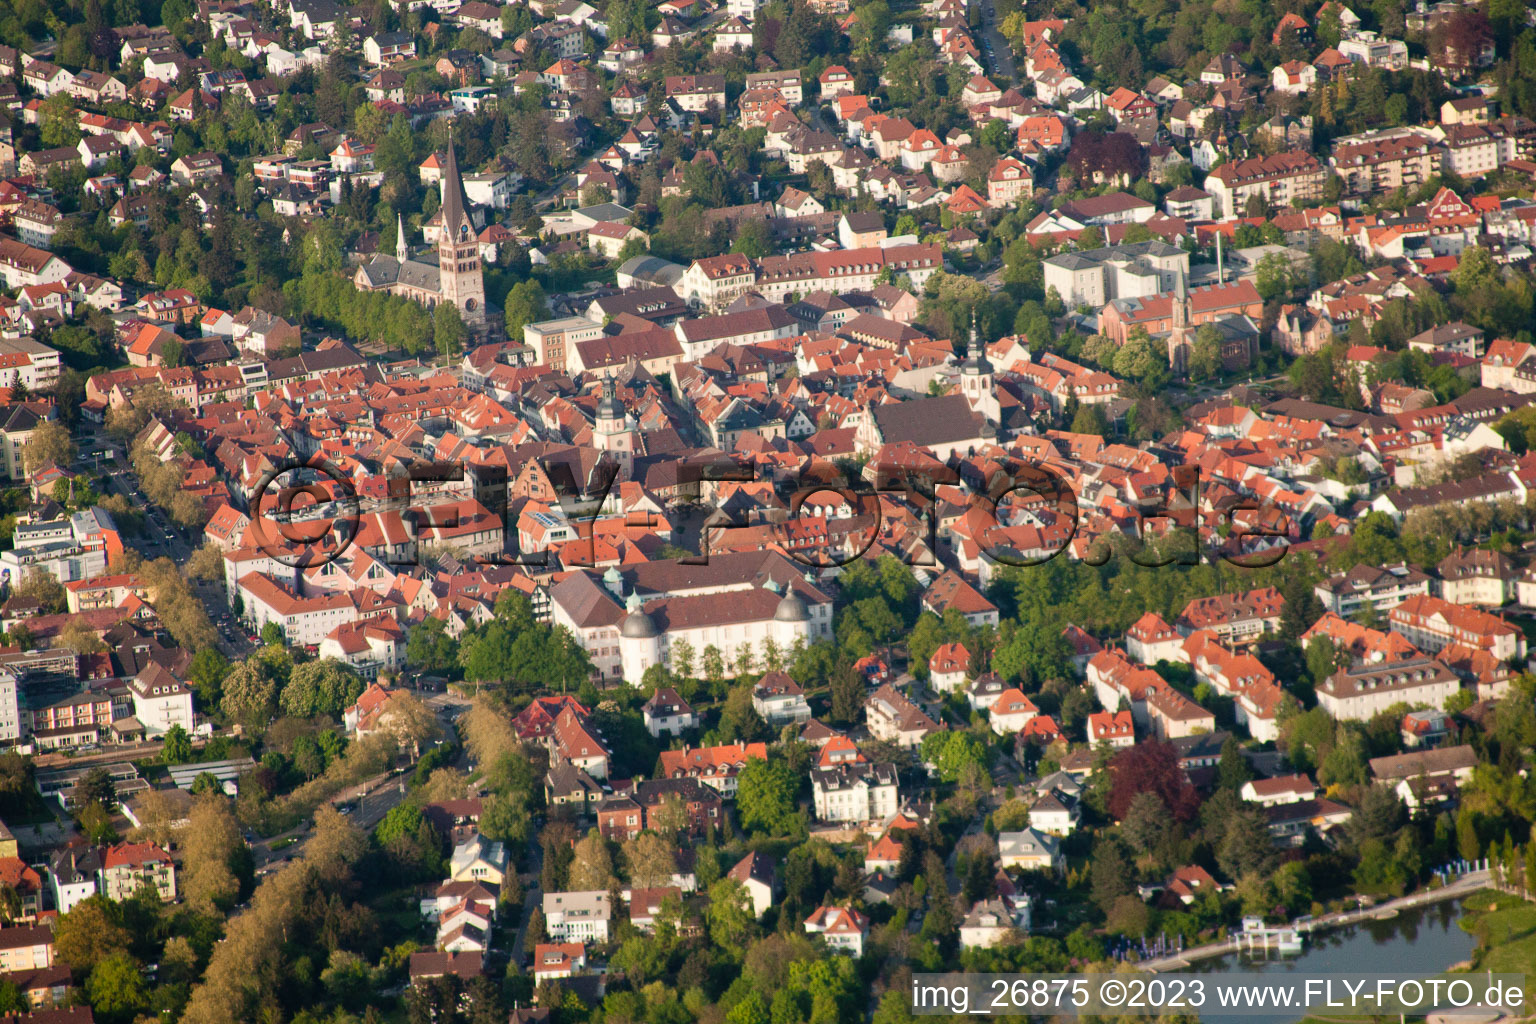 Aerial view of Ettlinger Castle in Ettlingen in the state Baden-Wuerttemberg, Germany